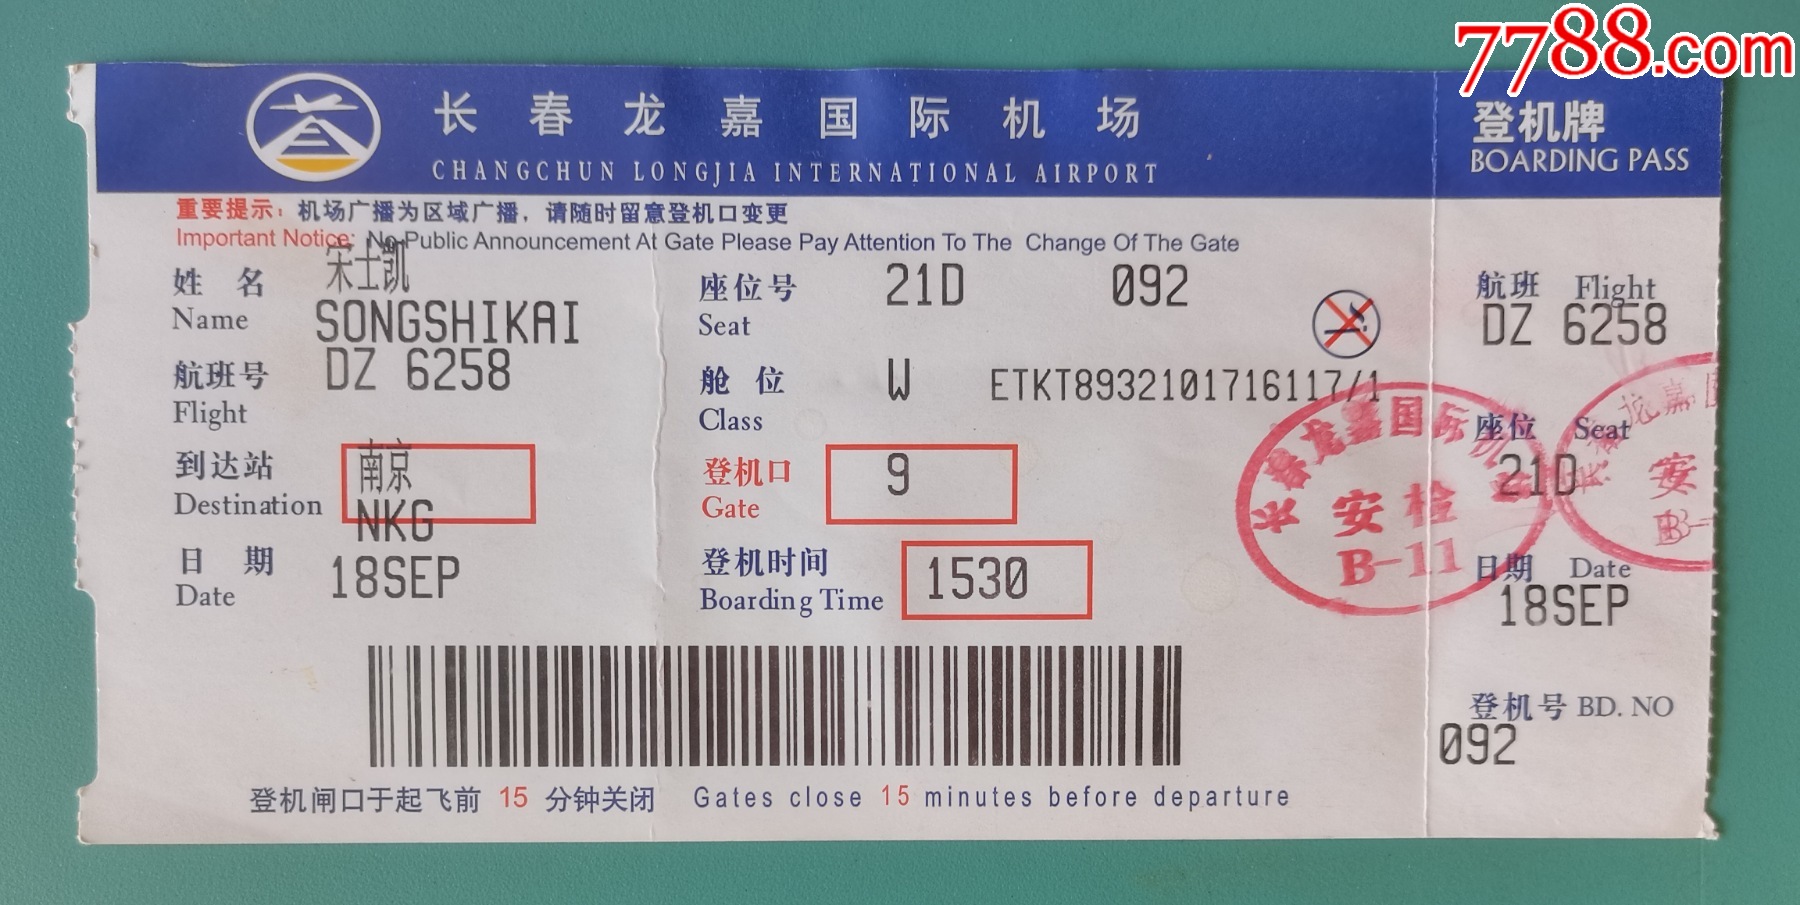 中国国际航空公司重庆至长春机票2枚-价格:9元-se94186904-飞机/航空票-零售-7788收藏__收藏热线